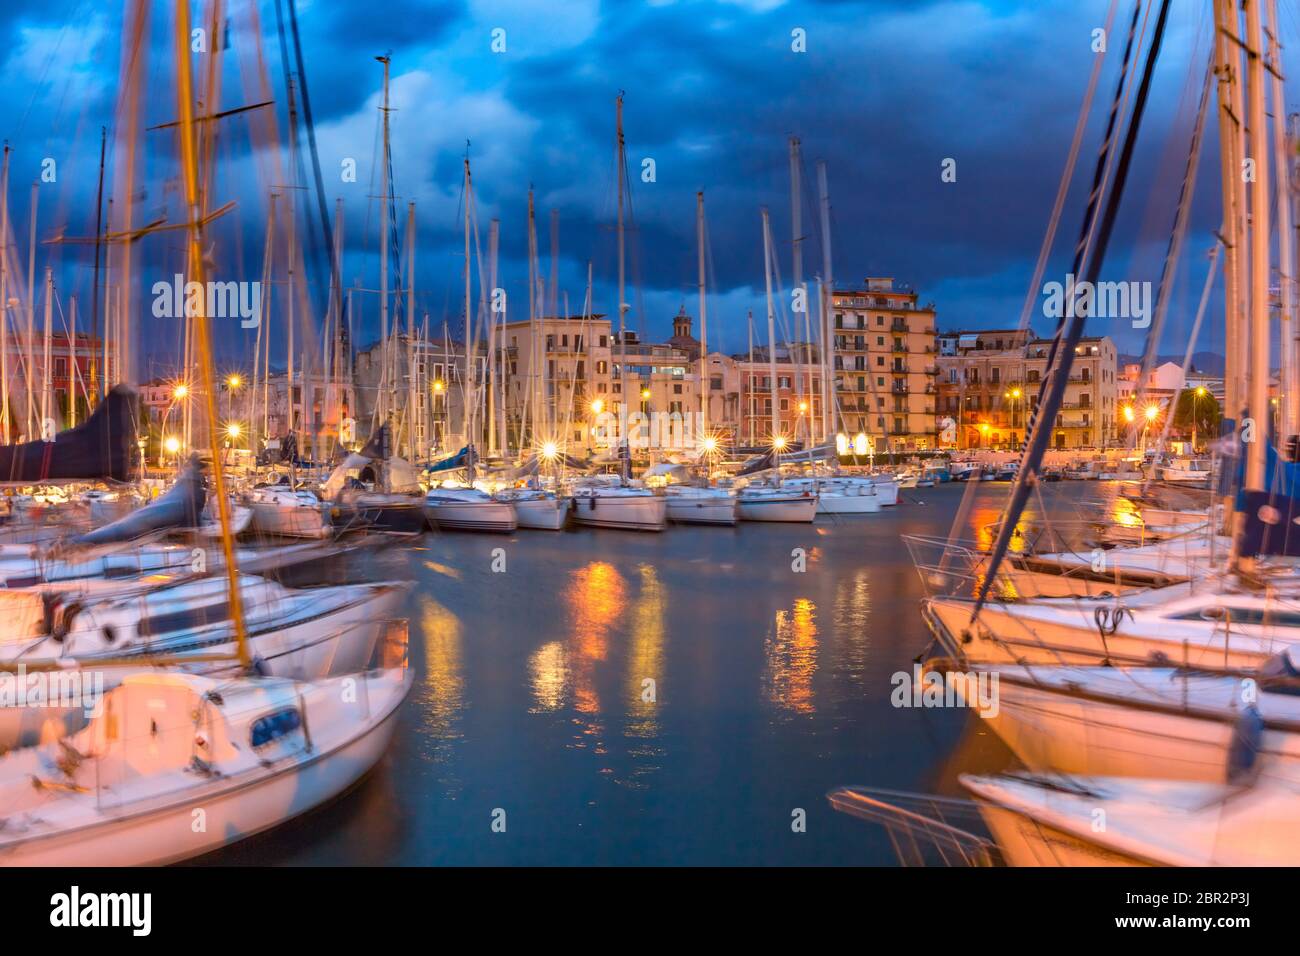 Yachts dans le plus ancien port de la ville de Palerme, la Cala, pendant l'heure bleue du matin, la Sicile, le sud de l'Italie Banque D'Images